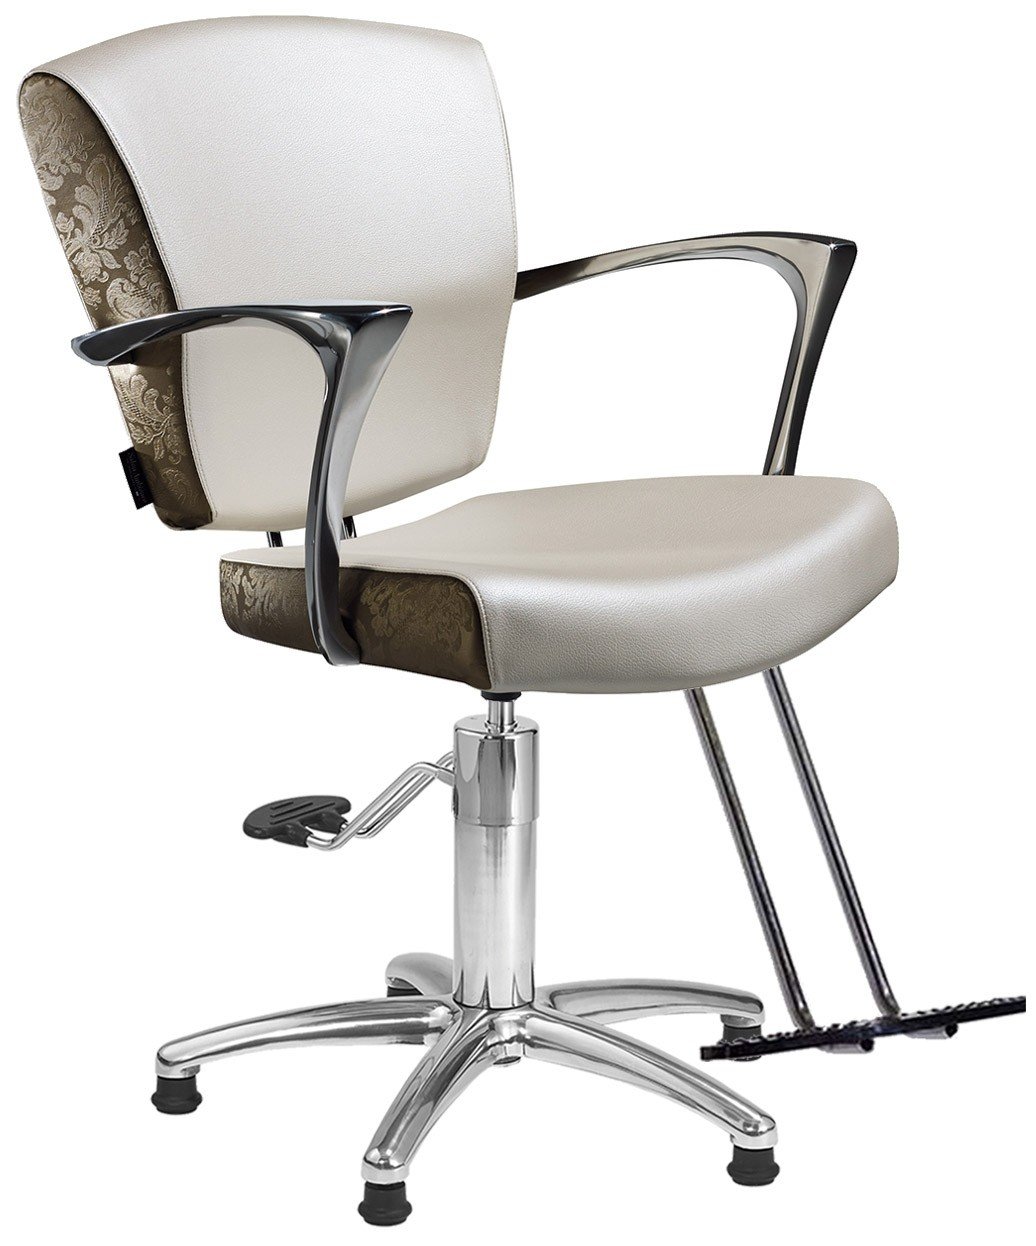 Salon Ambience SH-410 Maya Styling Chair